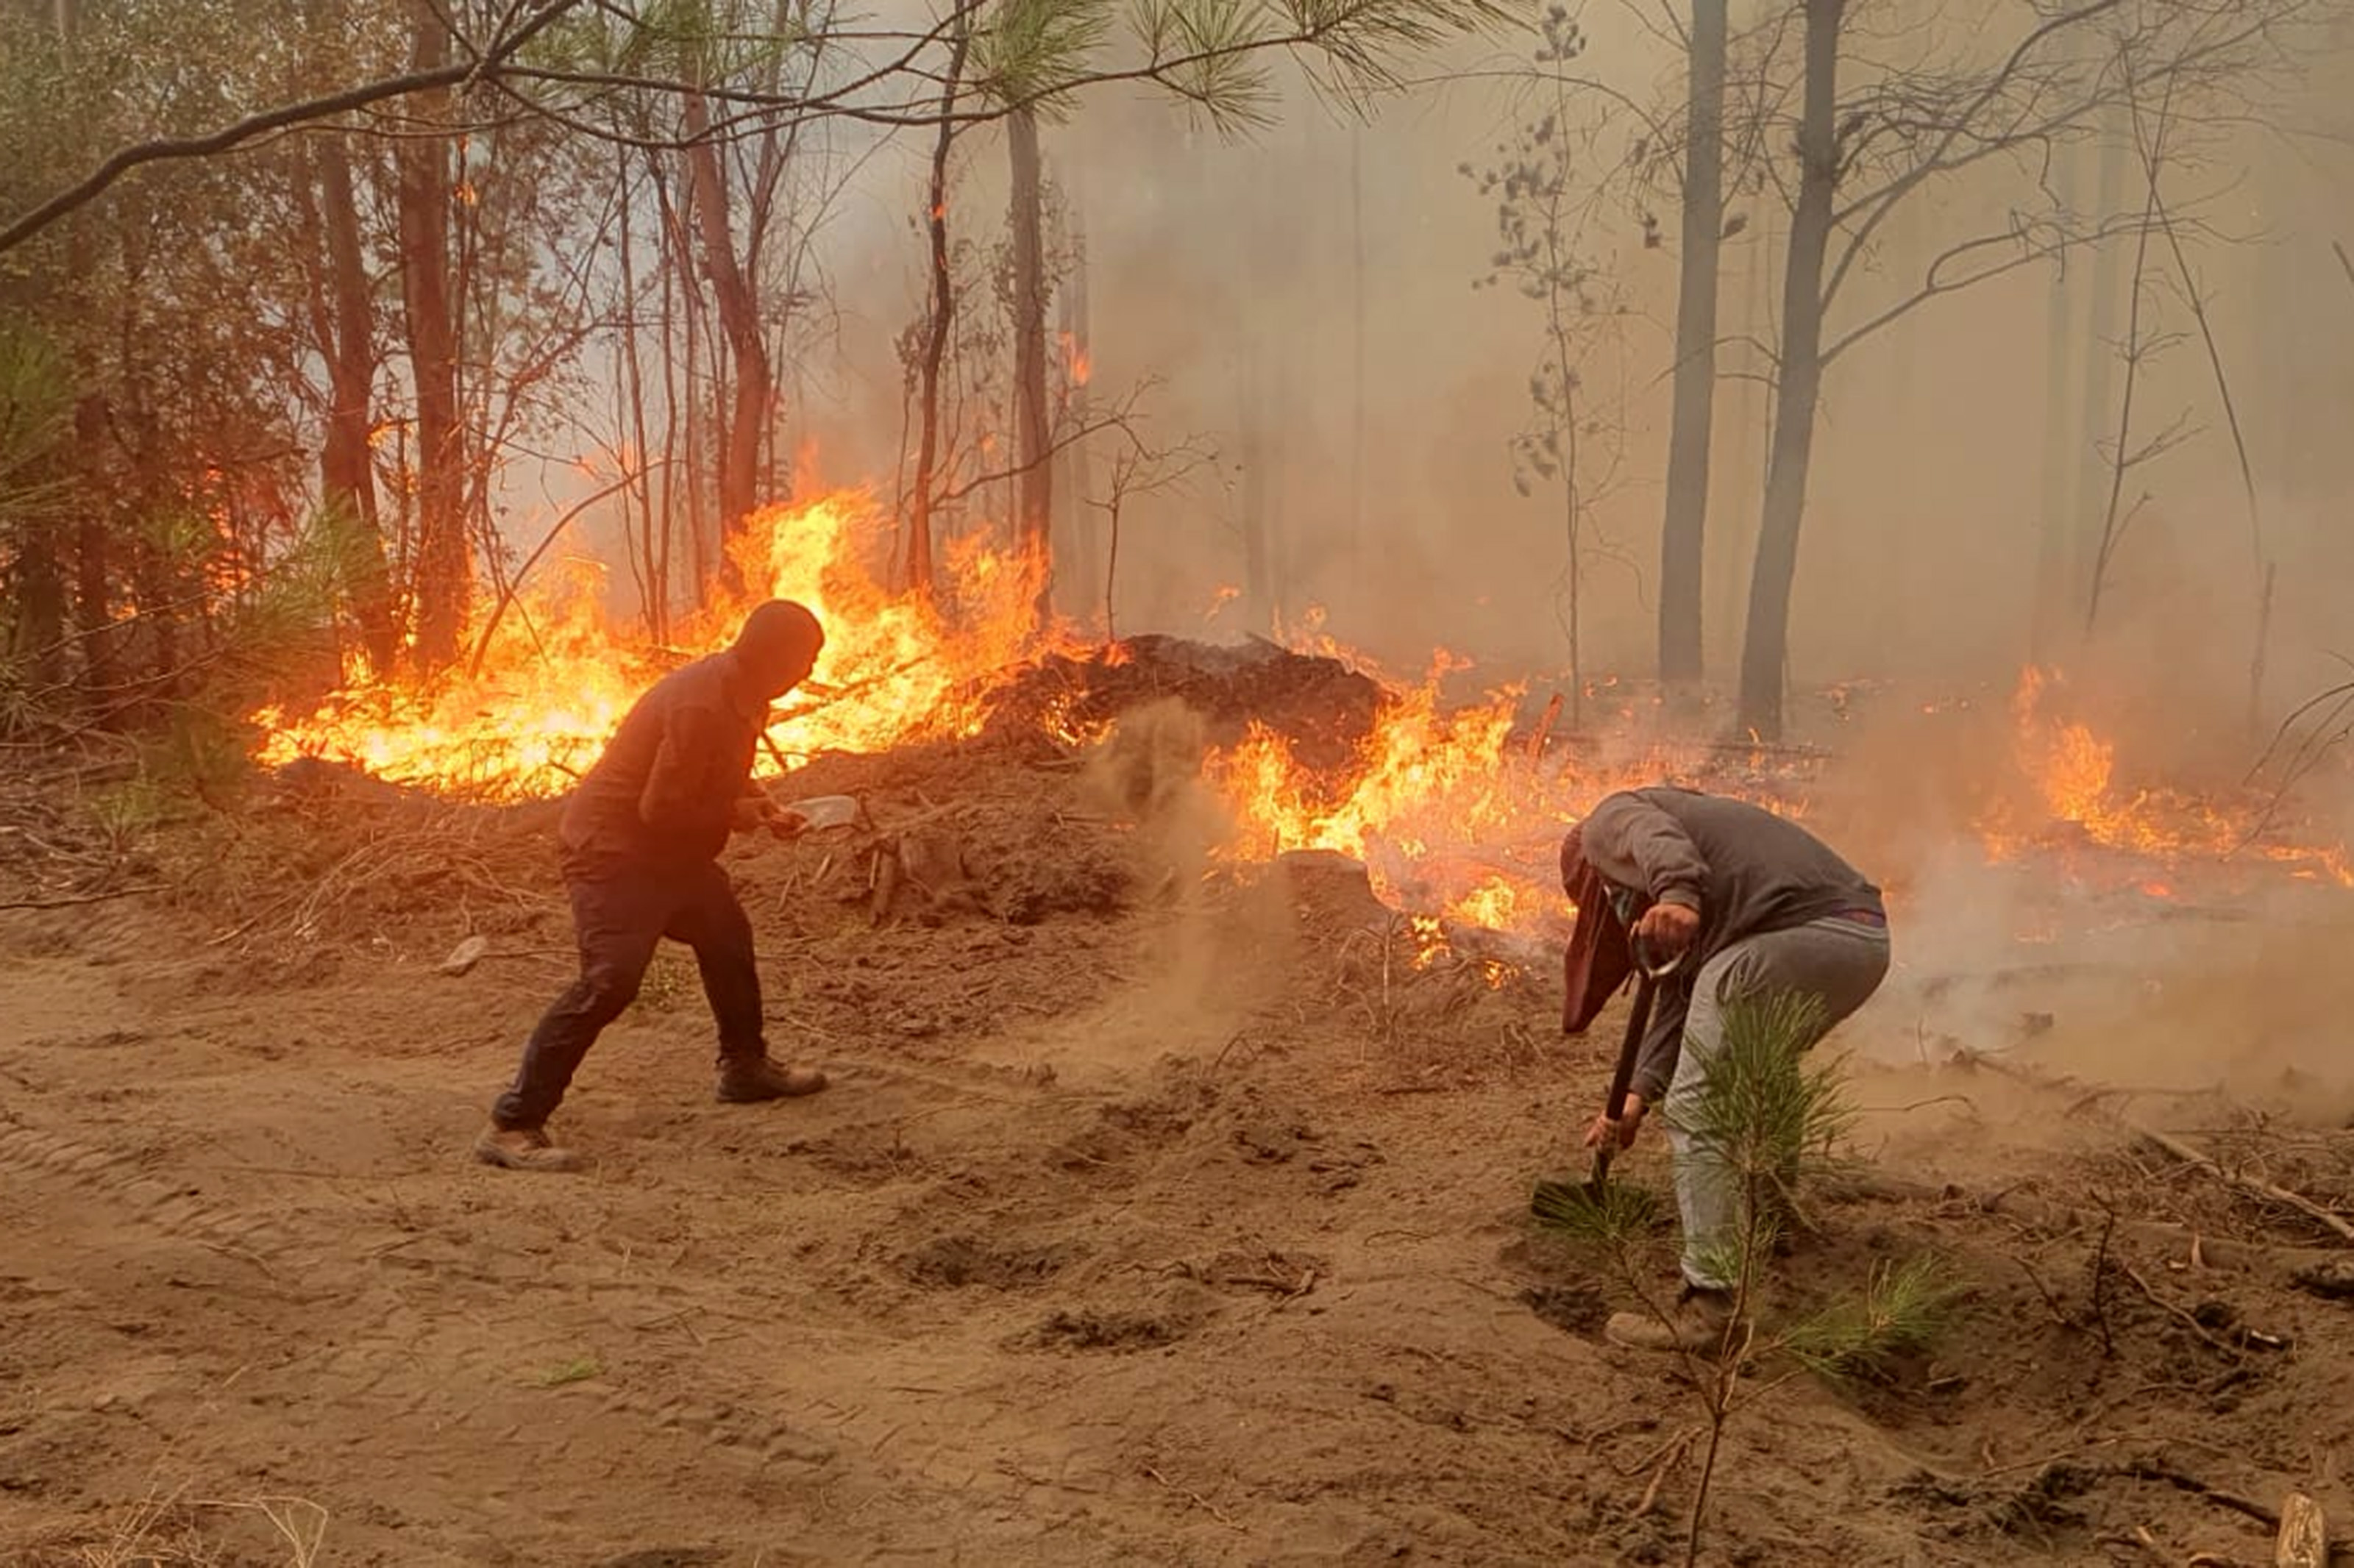 Quilleco, 6 de febrero de 2023.
Incendios forestales se registran en la comuna de Quilleco region del Bio Bio.
Livio Silva/Aton Chile